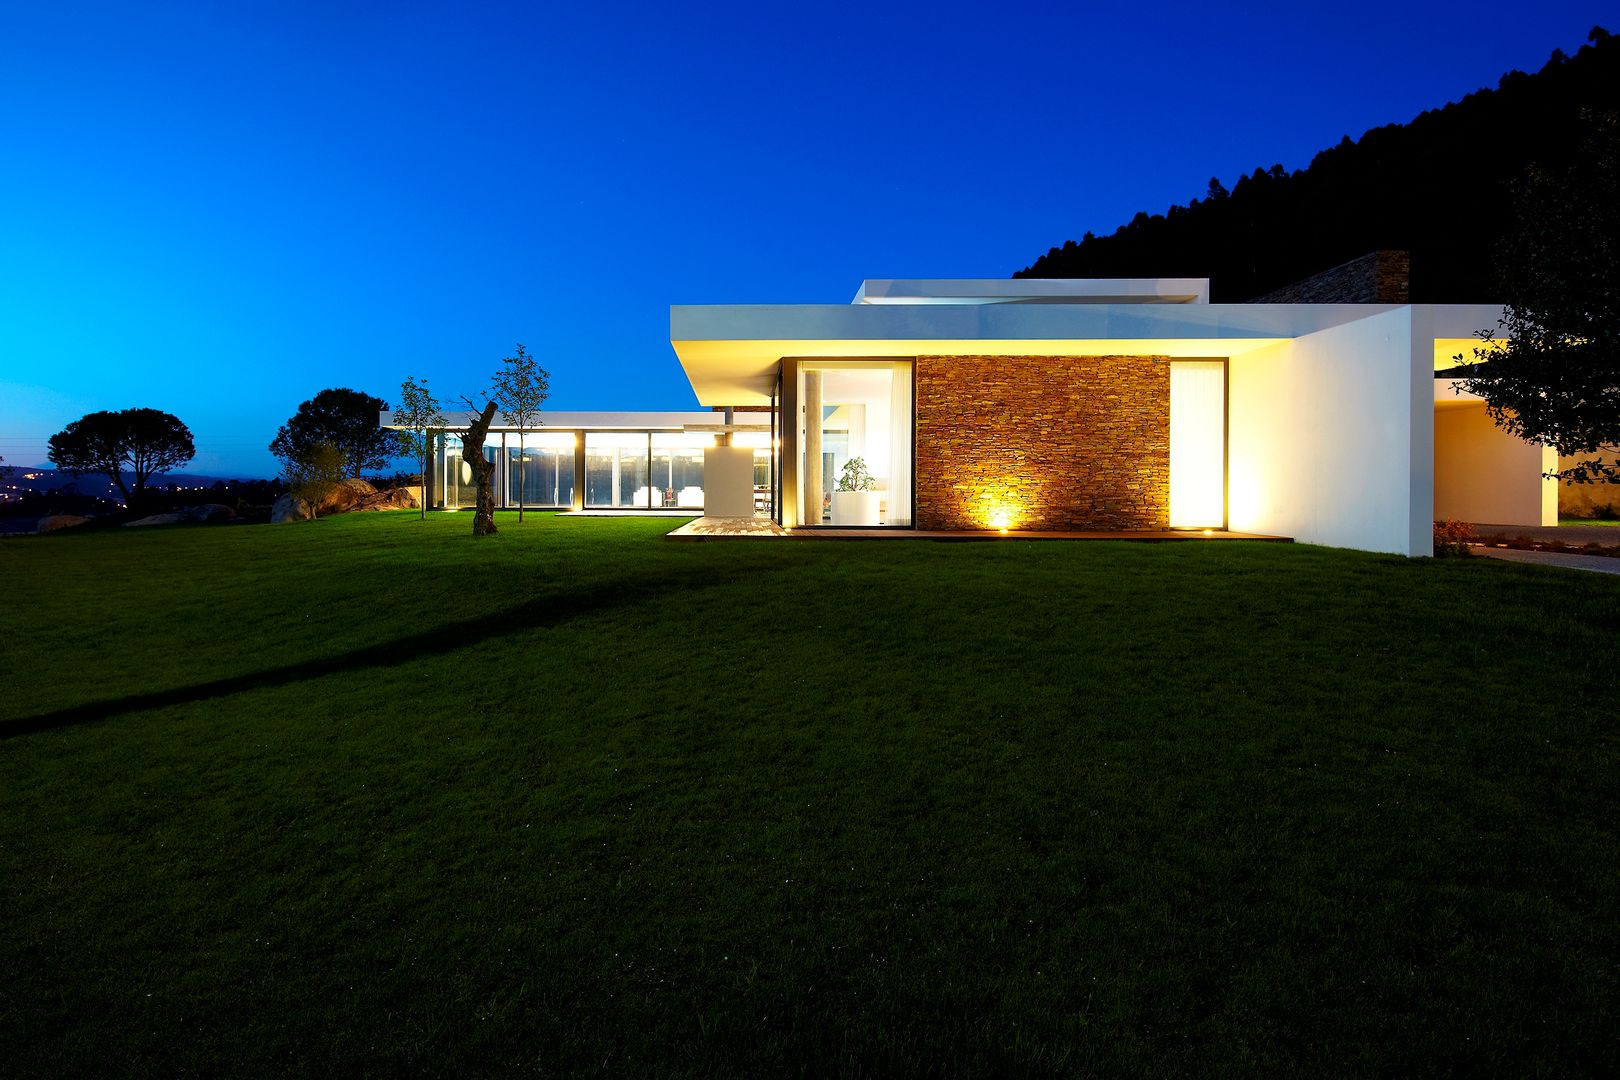 Casa moderna de dimensões generosas e piscina interior, Risco Singular - Arquitectura Lda Risco Singular - Arquitectura Lda Maisons minimalistes